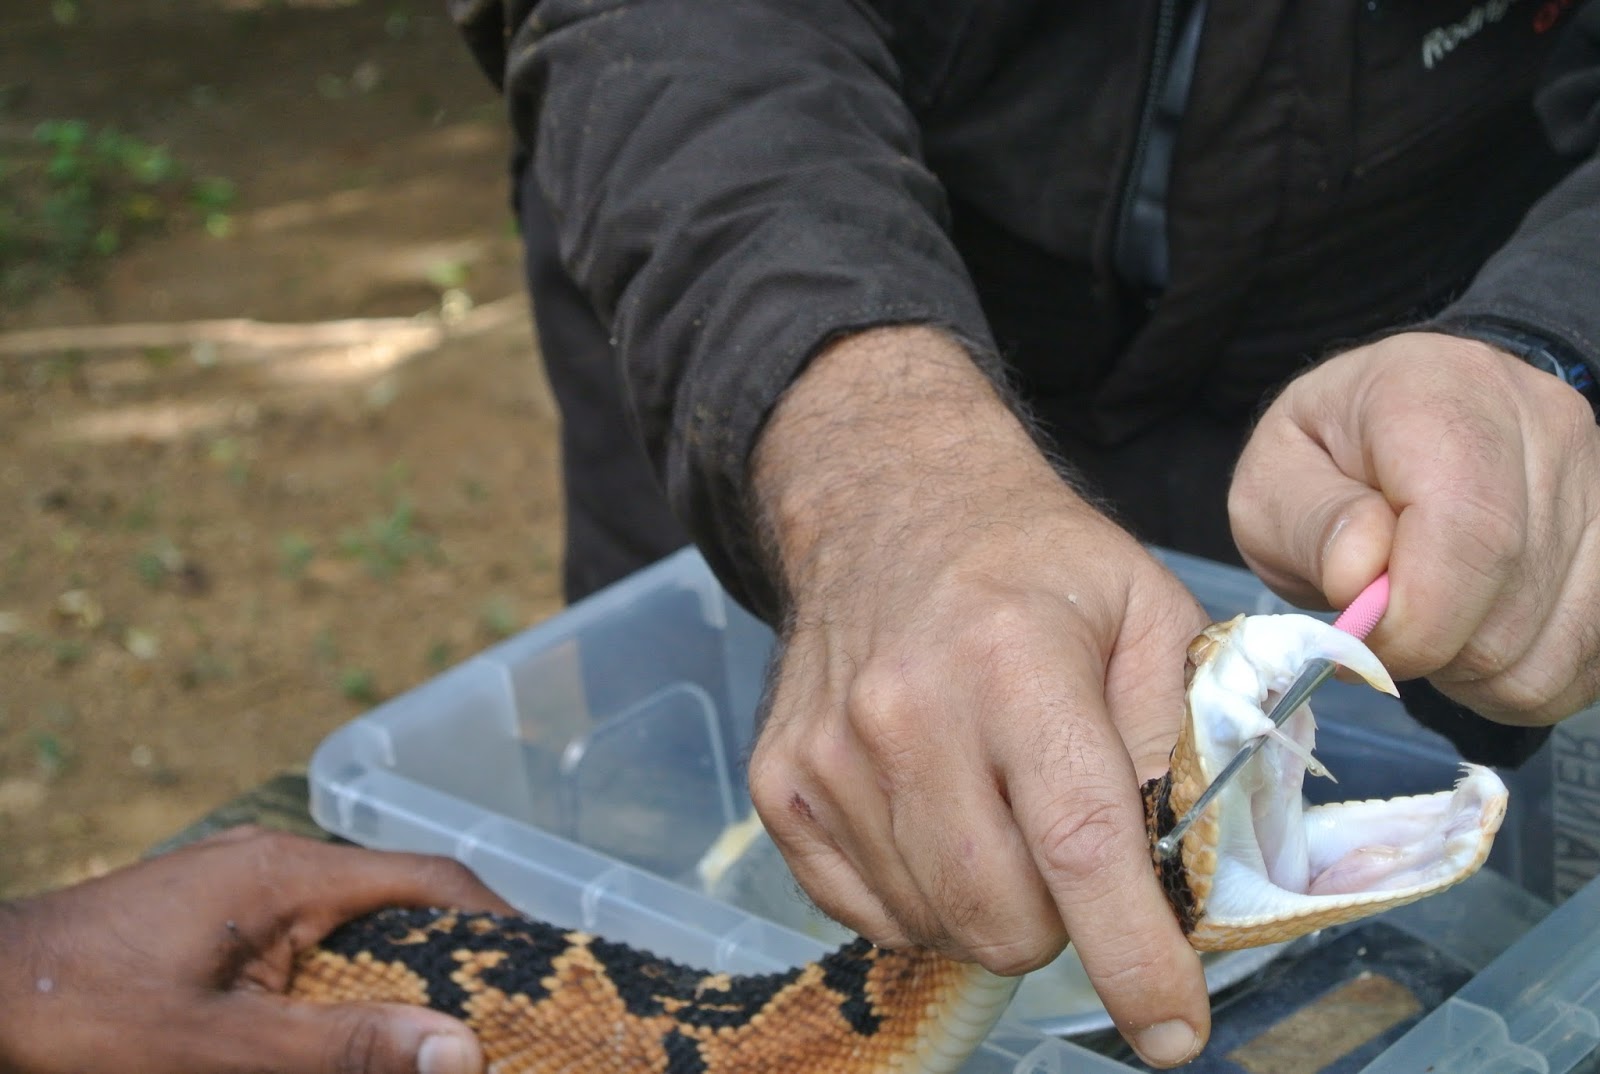 Como prevenir picada de cobra - Save The Snakes